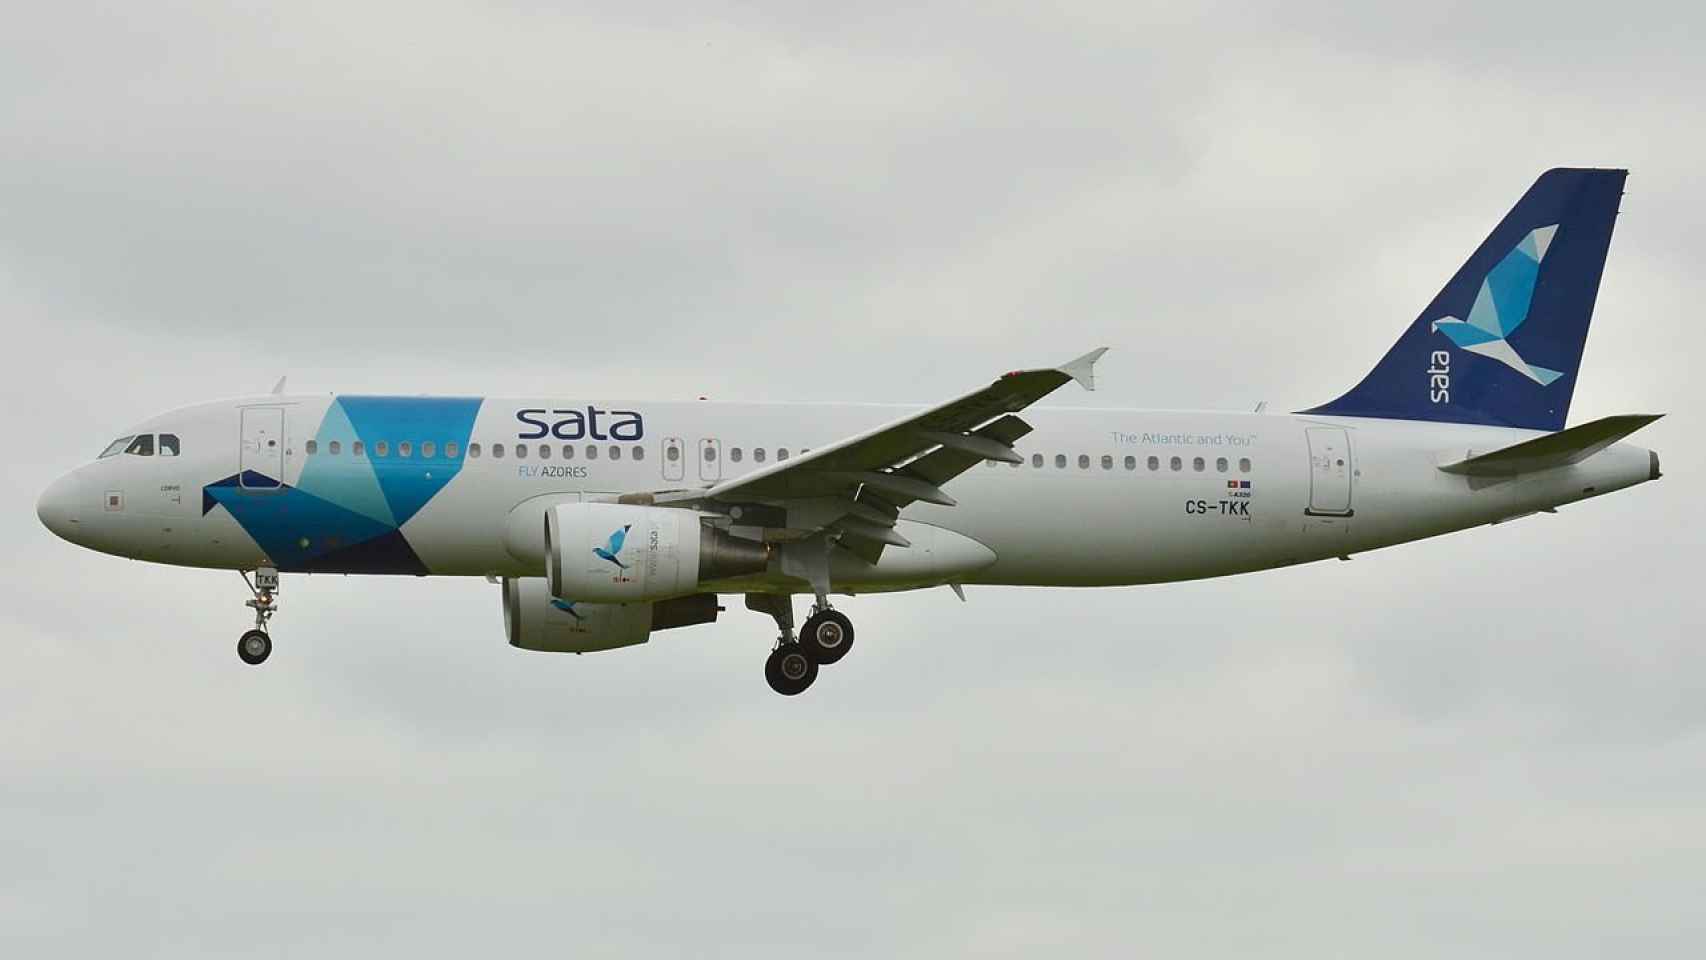 Un Airbus A320 del grupo SATA, empresa propietaria de Azores Airlines / LAURENT ERRERA